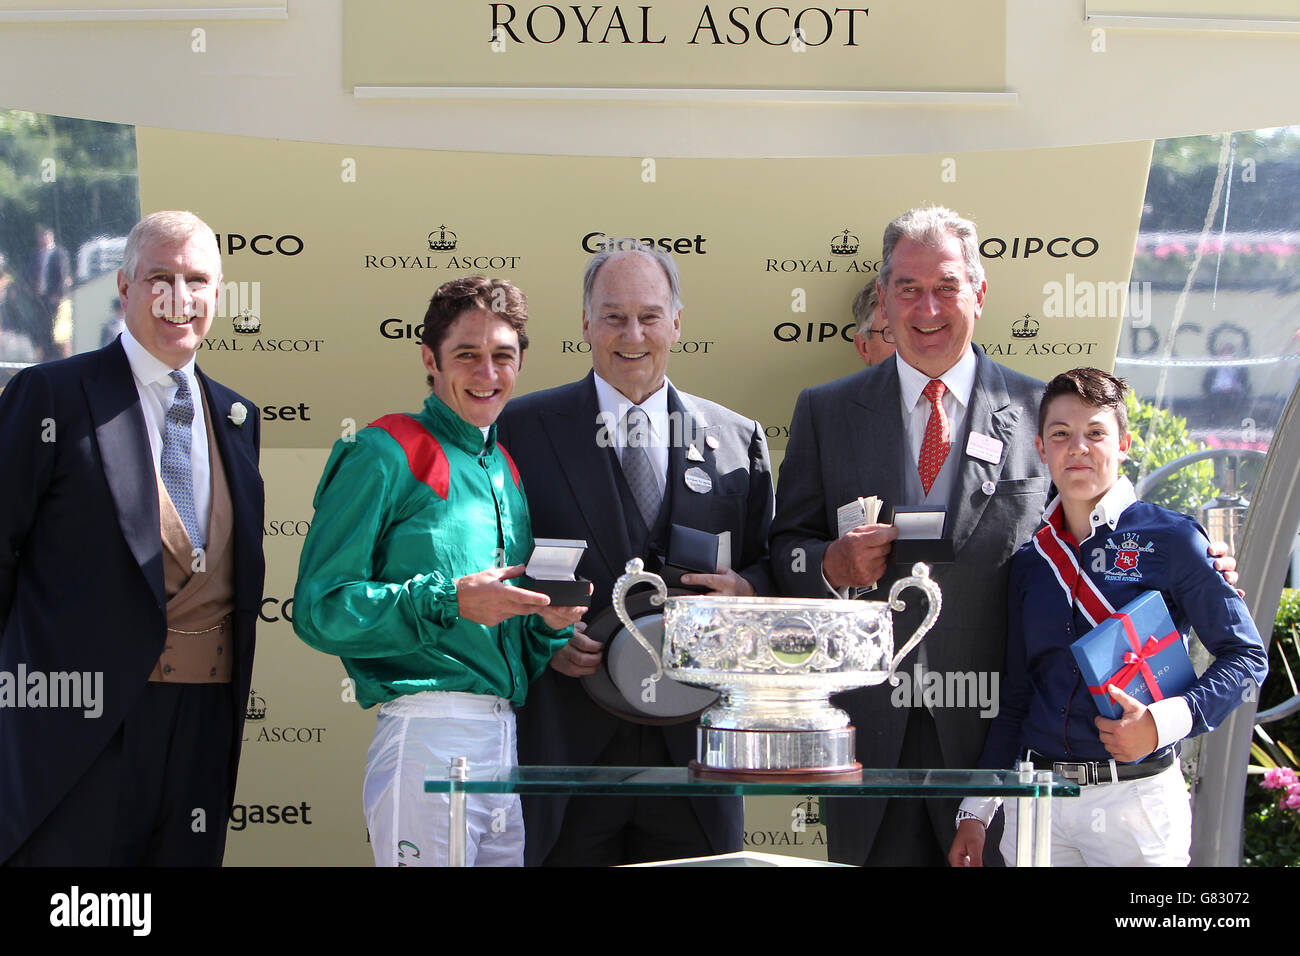 Corse di cavalli - Il Royal Ascot incontro 2015 - Giorno 4 - Ascot Racecourse Foto Stock